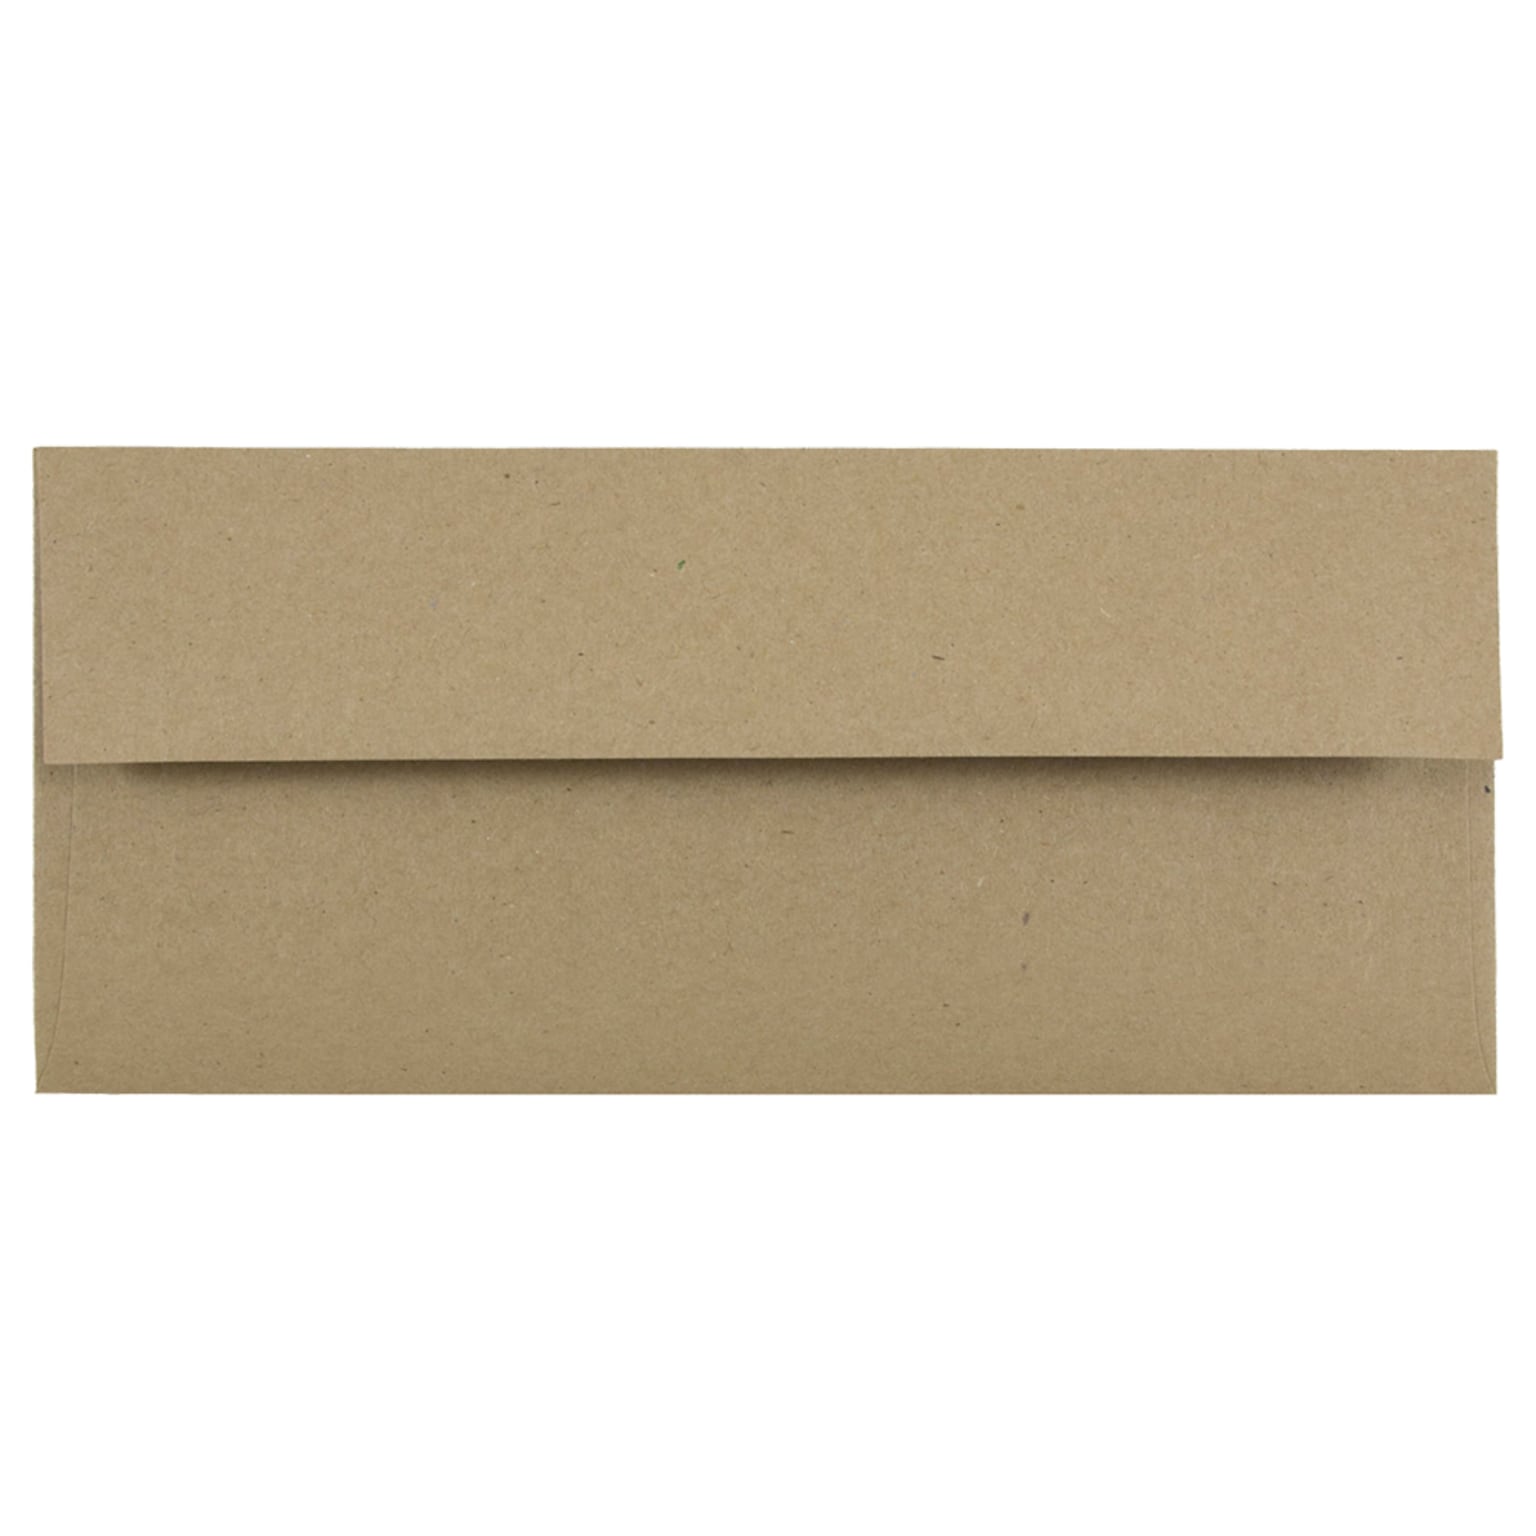 JAM Paper Open End #10 Business Envelope, 4 1/8 x 9 1/2, Brown Kraft, 50/Pack (6314842I)